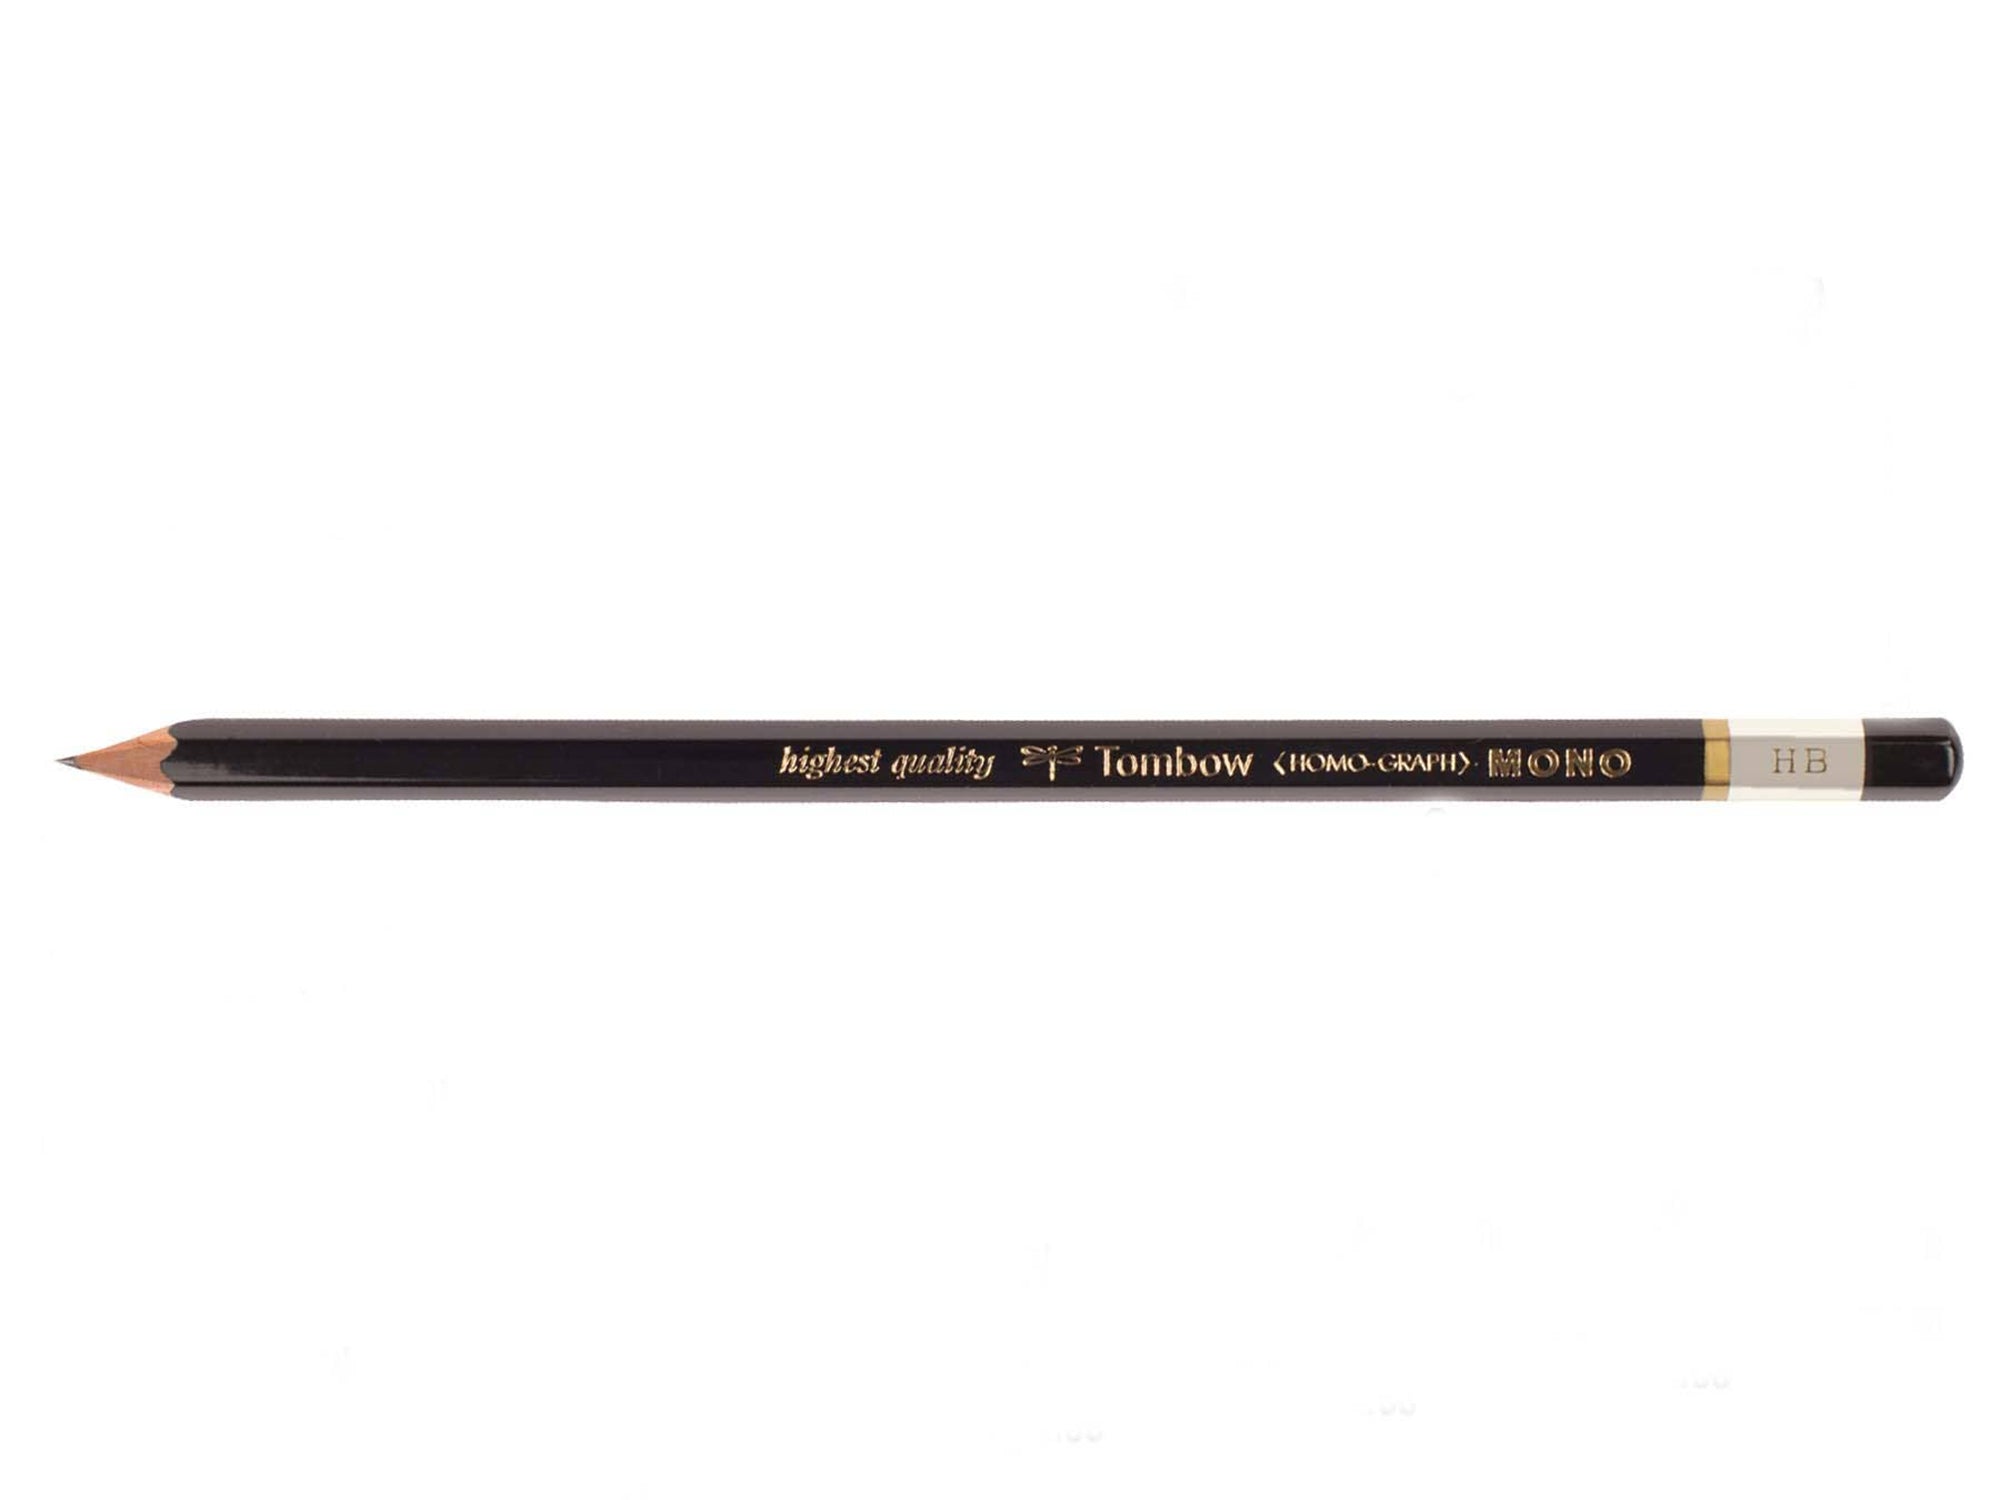 Tombow Dual Brush Pen Portrait Set – Jenni Bick Custom Journals